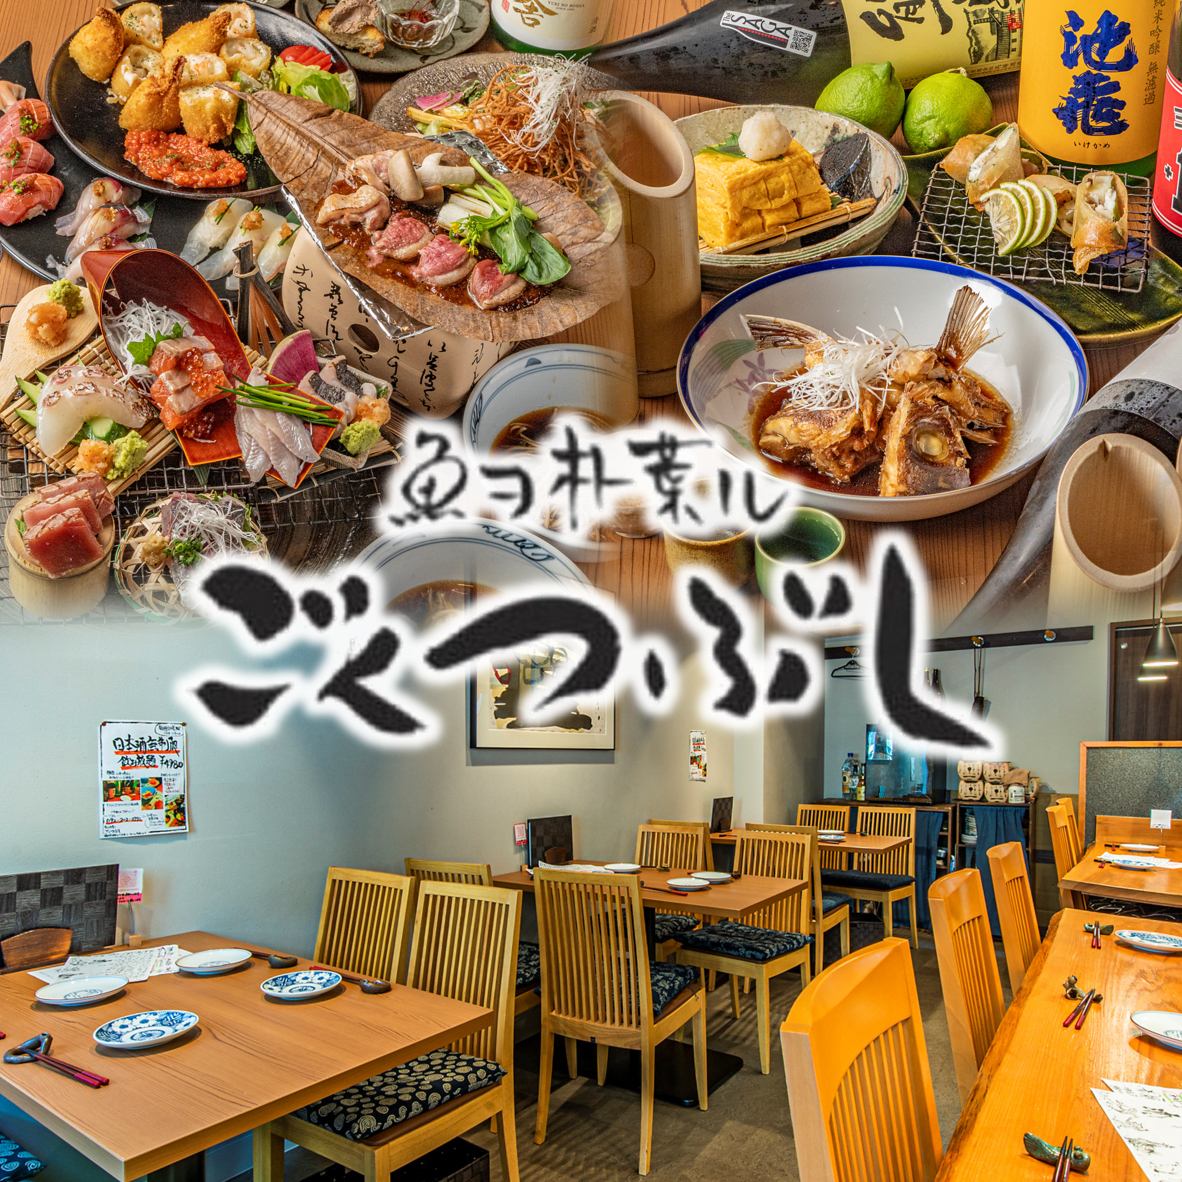 可以品尝到市场直送的鲜鱼、创意时令料理、日本酒的餐厅◇